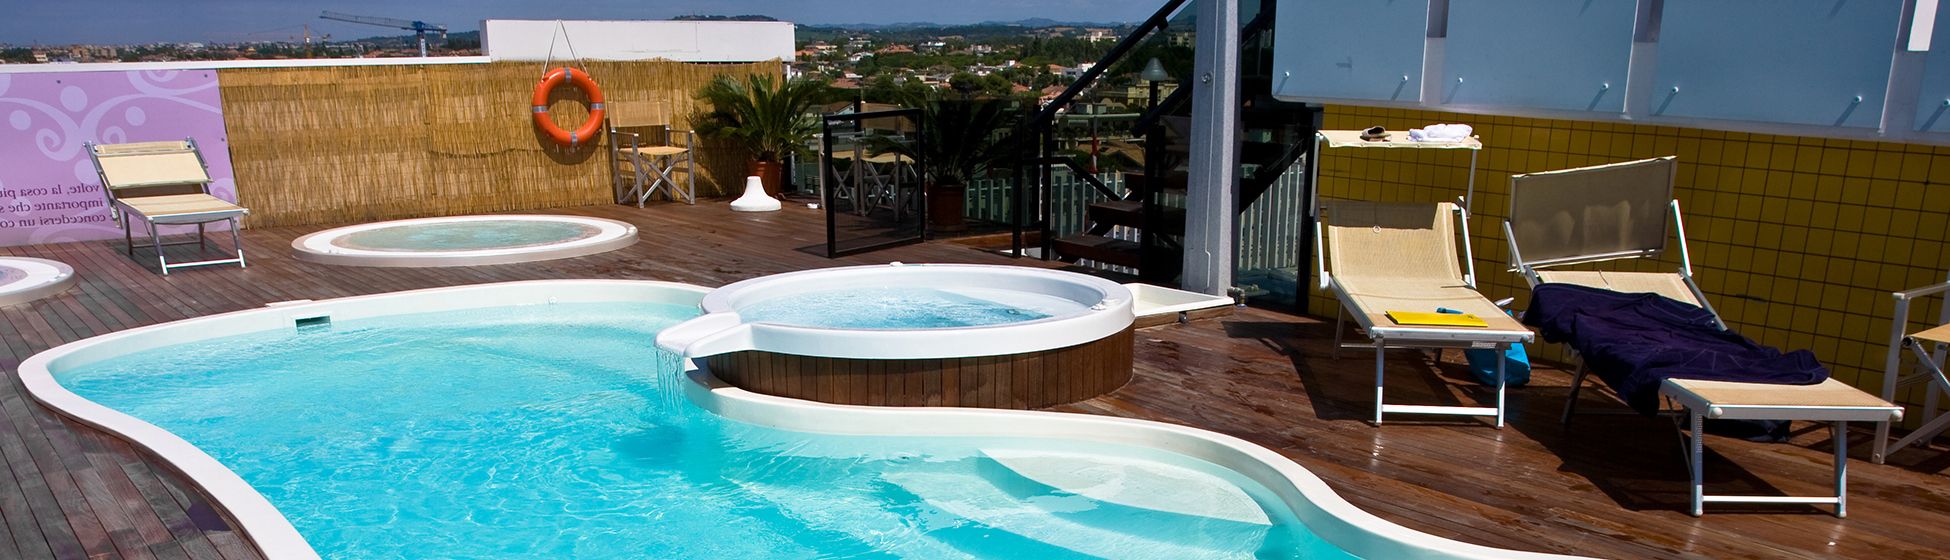 Location villa vacances martinique avec piscine